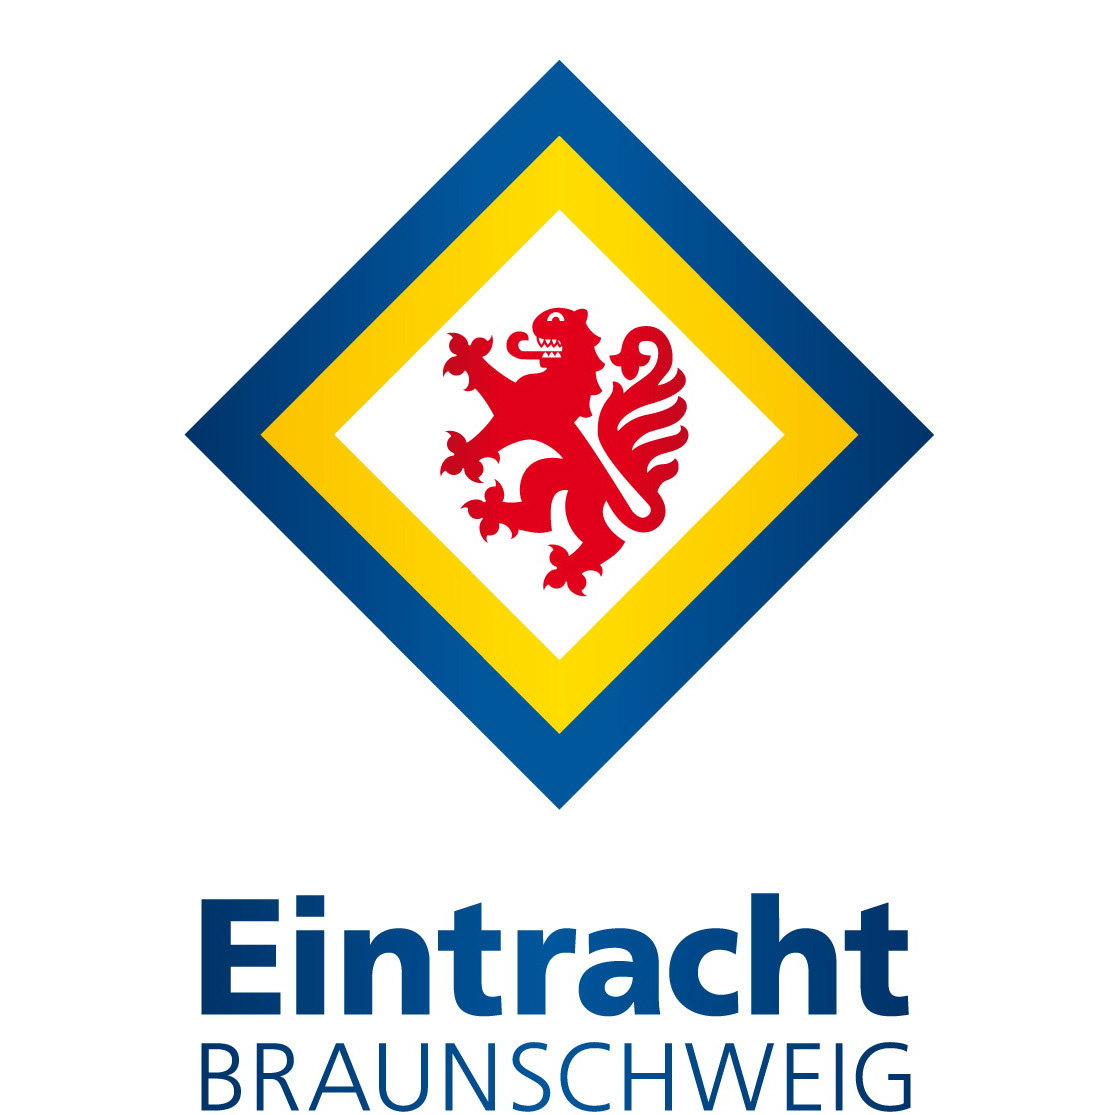 Eintracht Braunschweig Fanshop öffnungszeiten